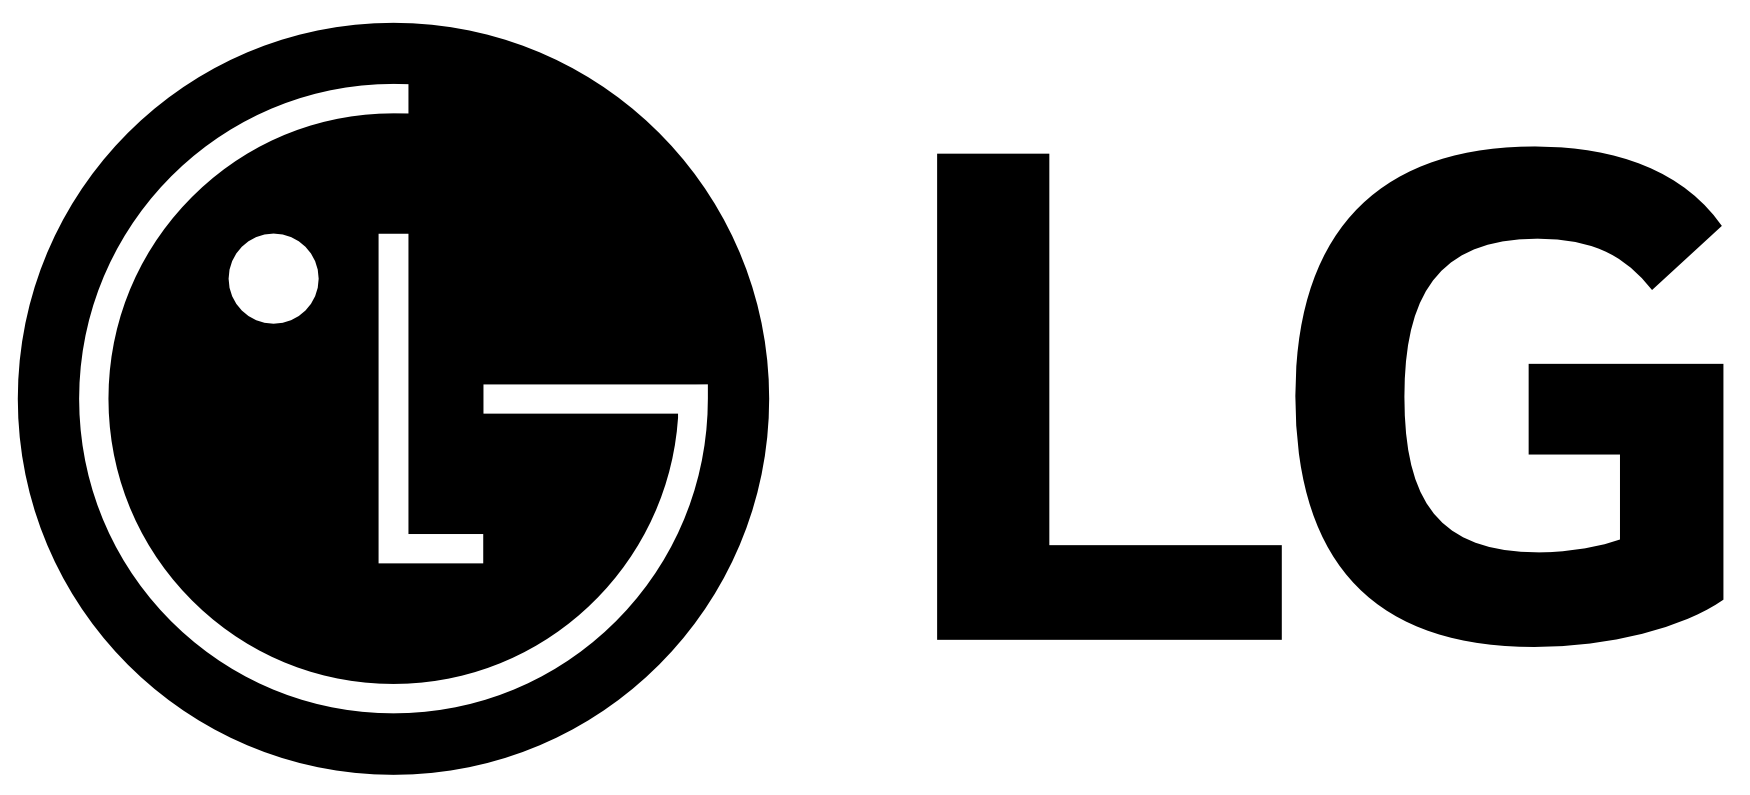 Logo de l’entreprise LG Electronics.